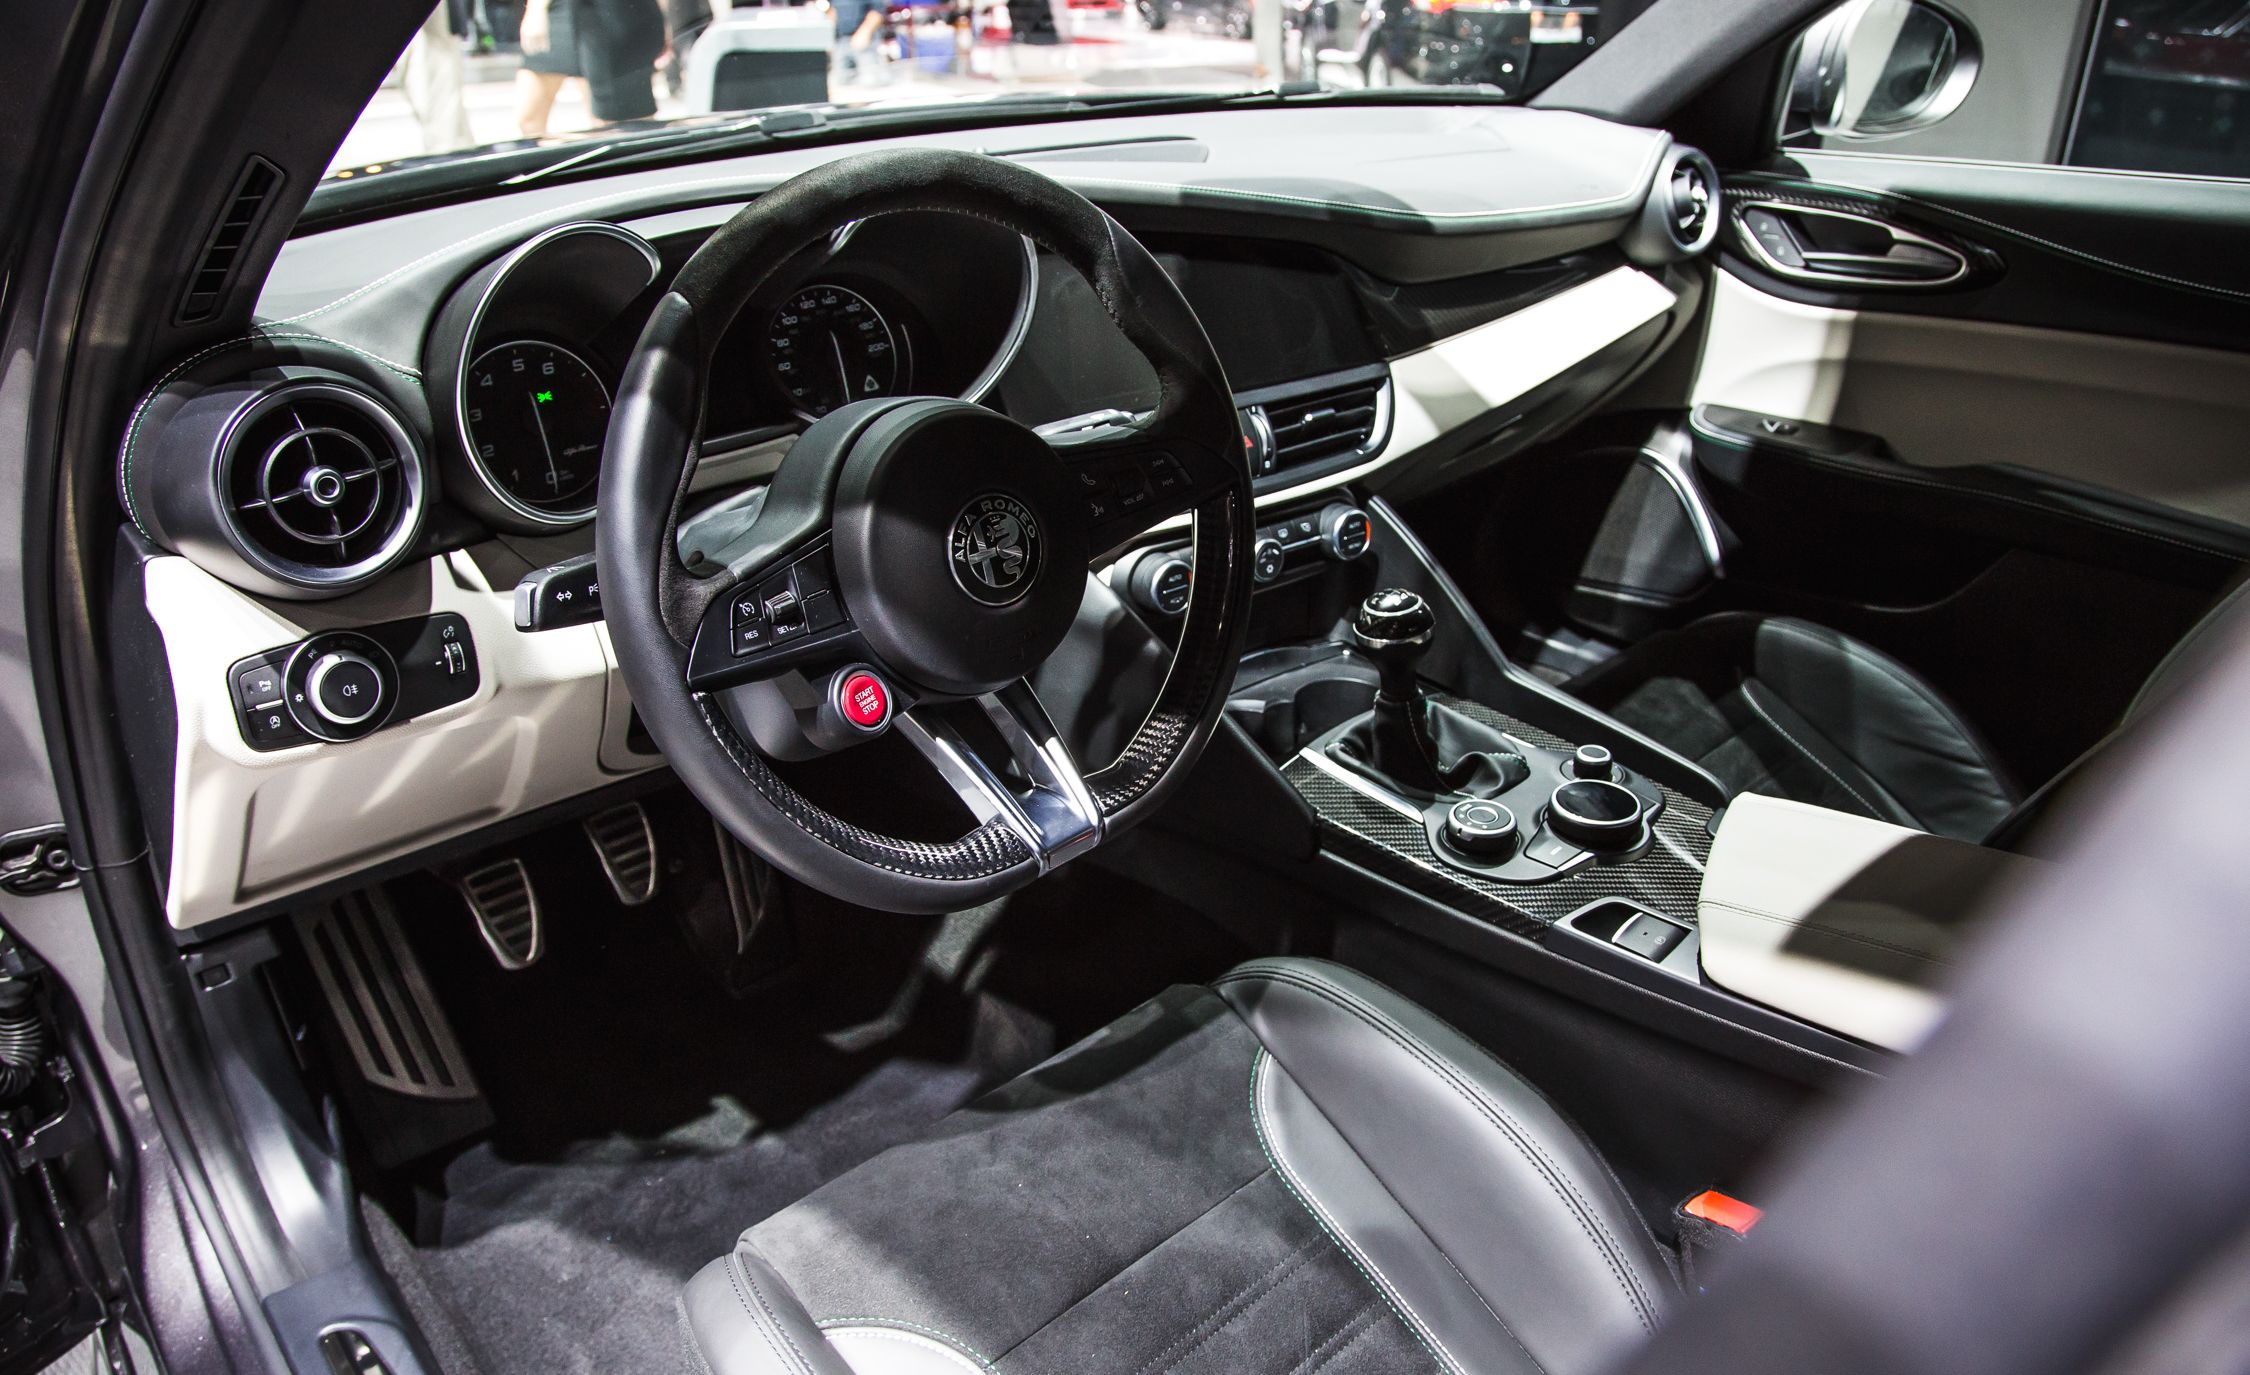 2017 Alfa Romeo Giulia Quadrifoglio Cockpit Interior (View 5 of 29)